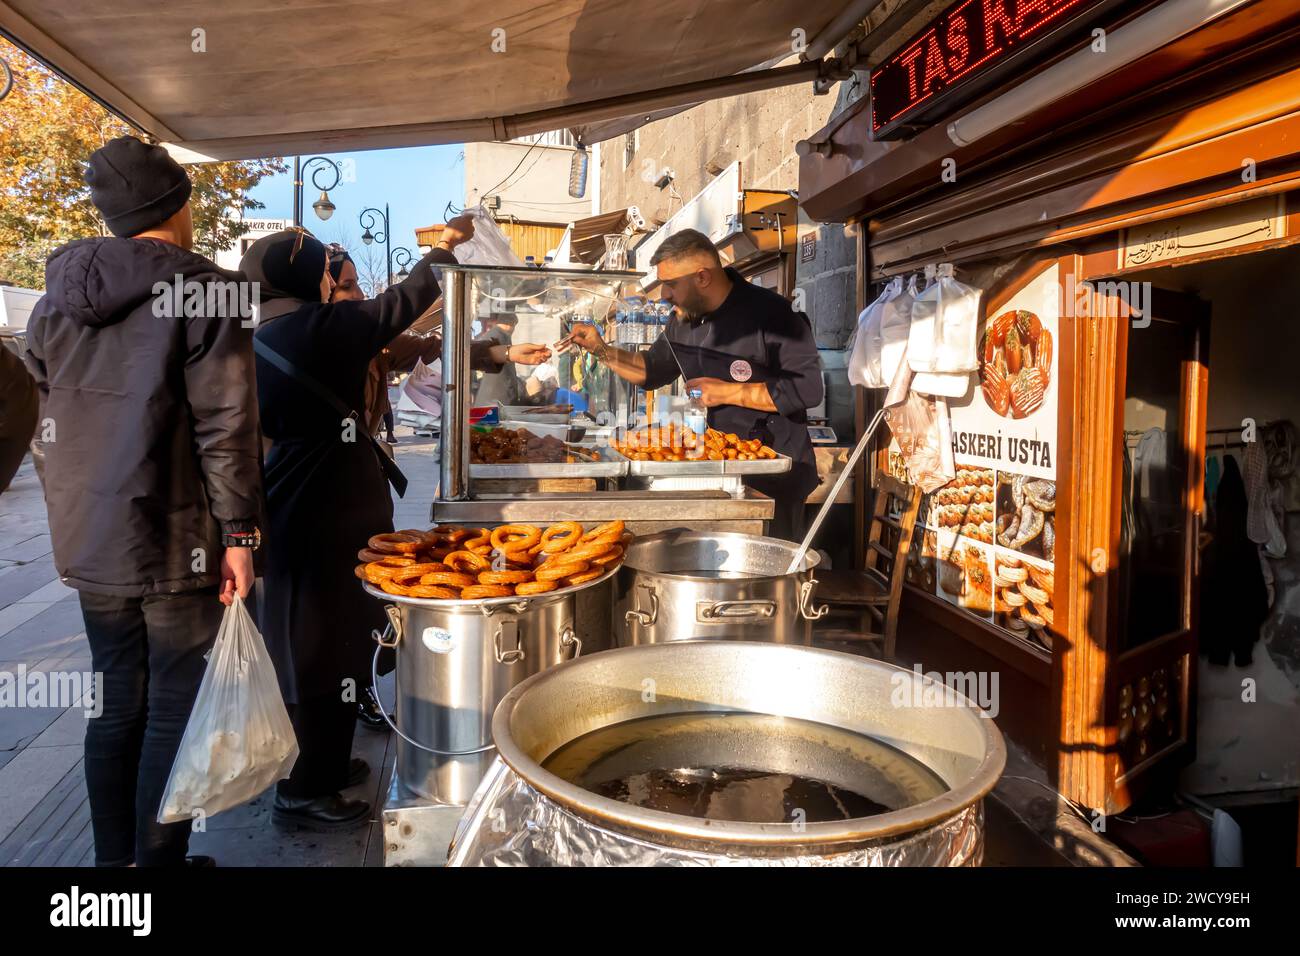 Biscotti caldi tradizionali curdi Koliche kulicha, dolci al forno, chiosco di vendita in strada con esposizione a Diyarbakir Turchia Foto Stock